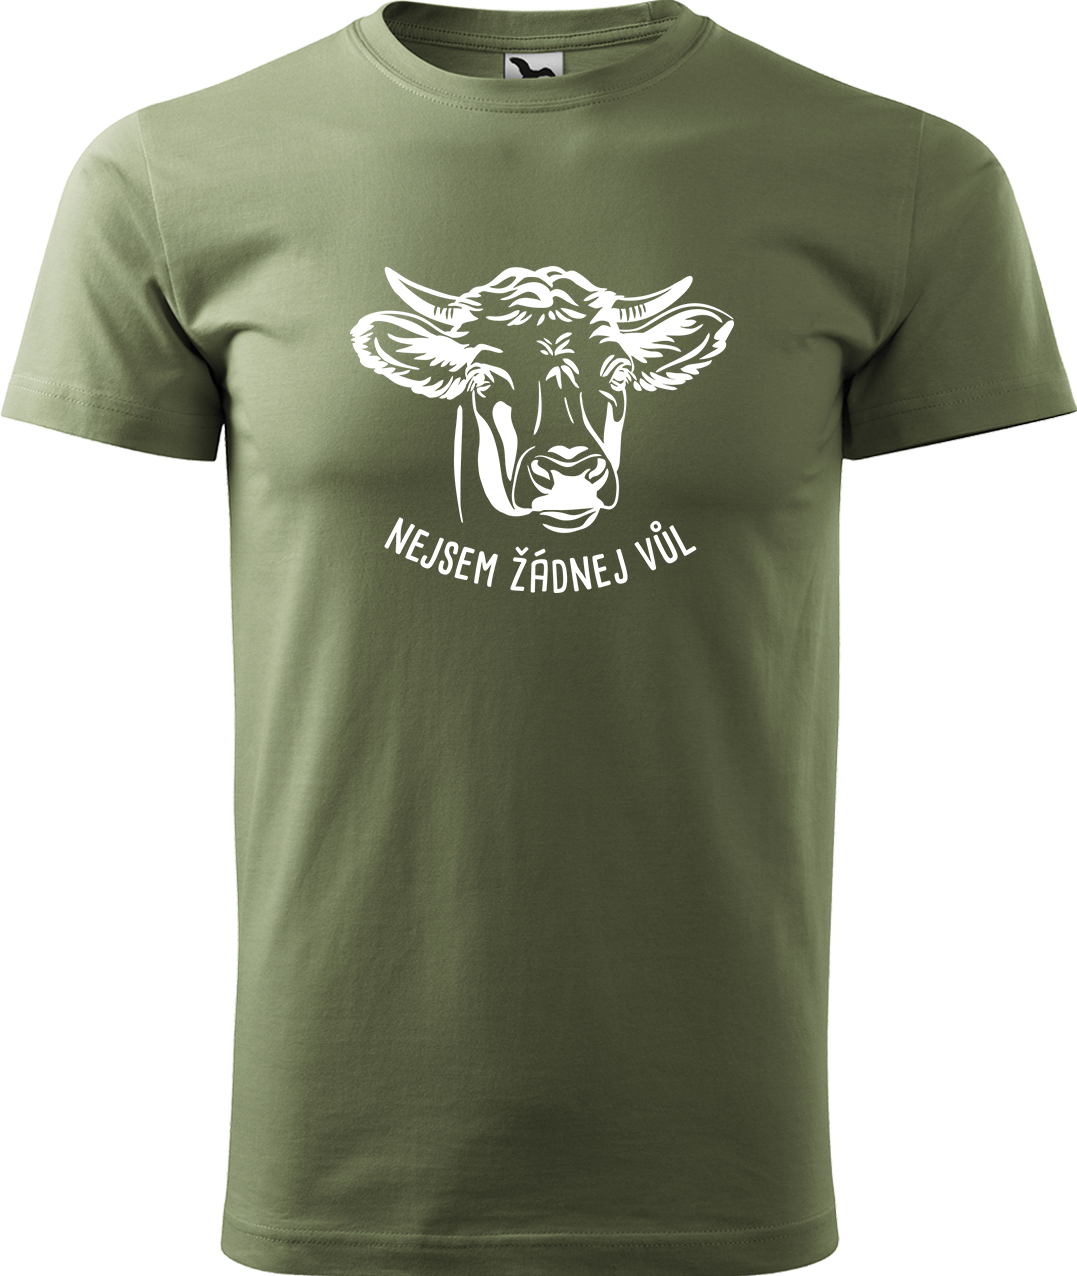 Pánské tričko s krávou - Nejsem žádnej vůl Velikost: S, Barva: Světlá khaki (28), Střih: pánský